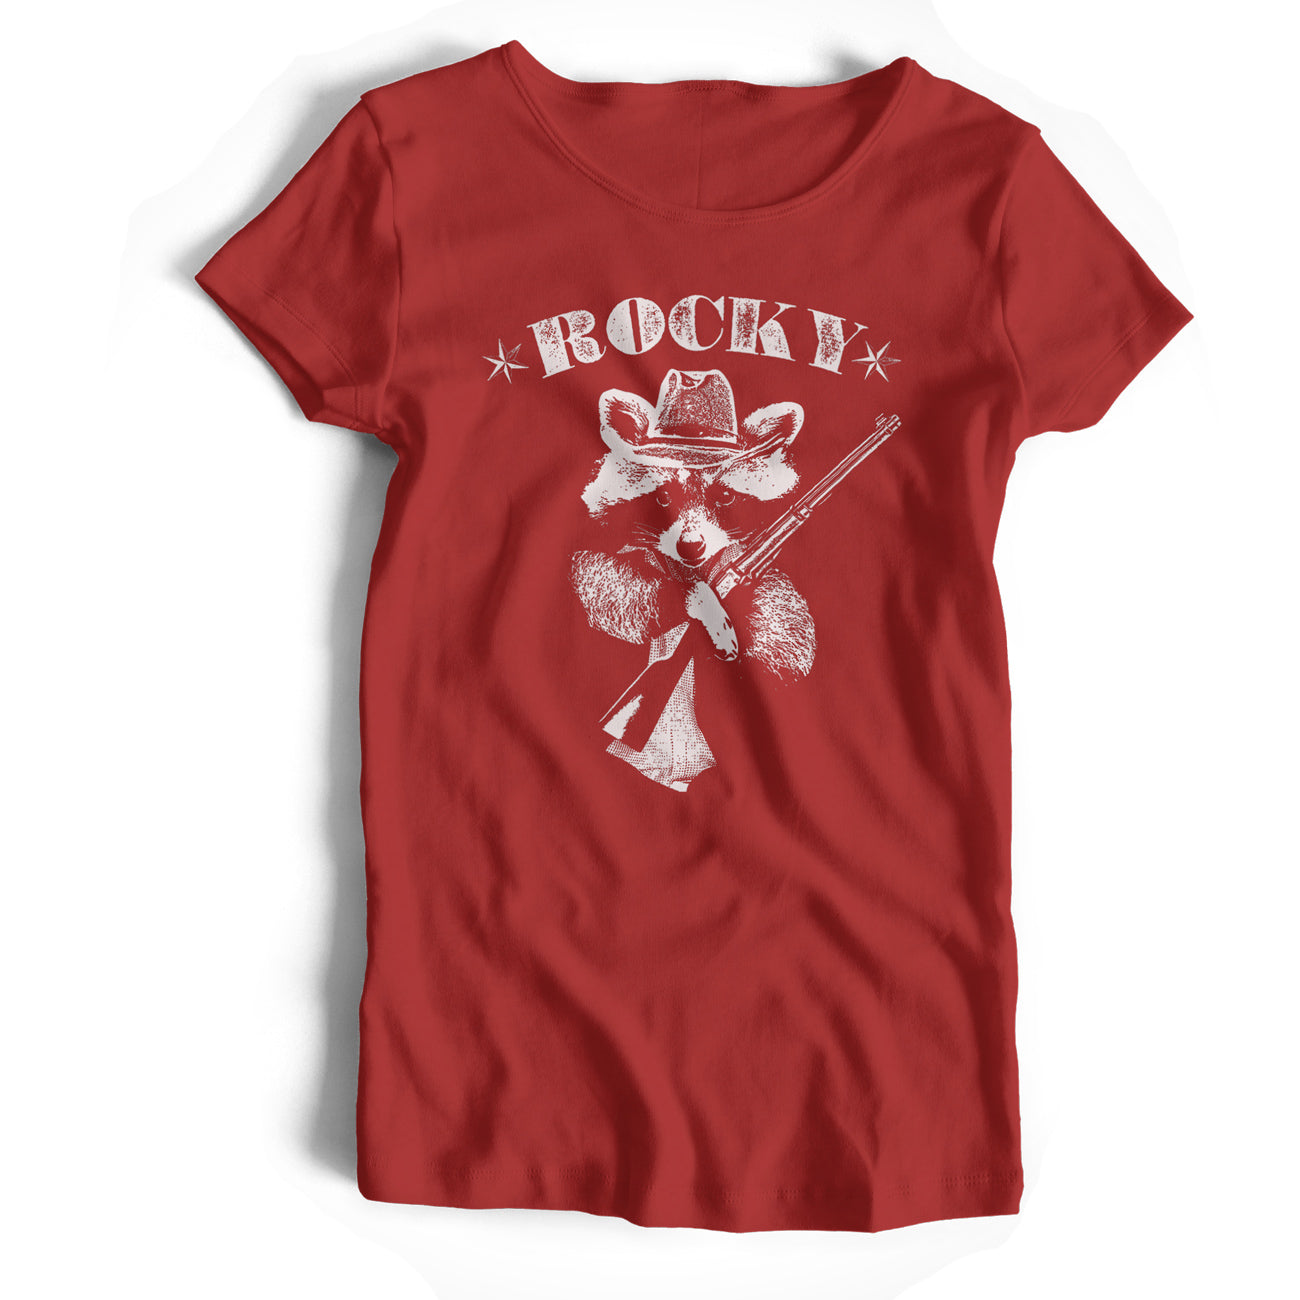 Rocky Racoon T Shirt - A 60's Pop Fab Four Influenced Original